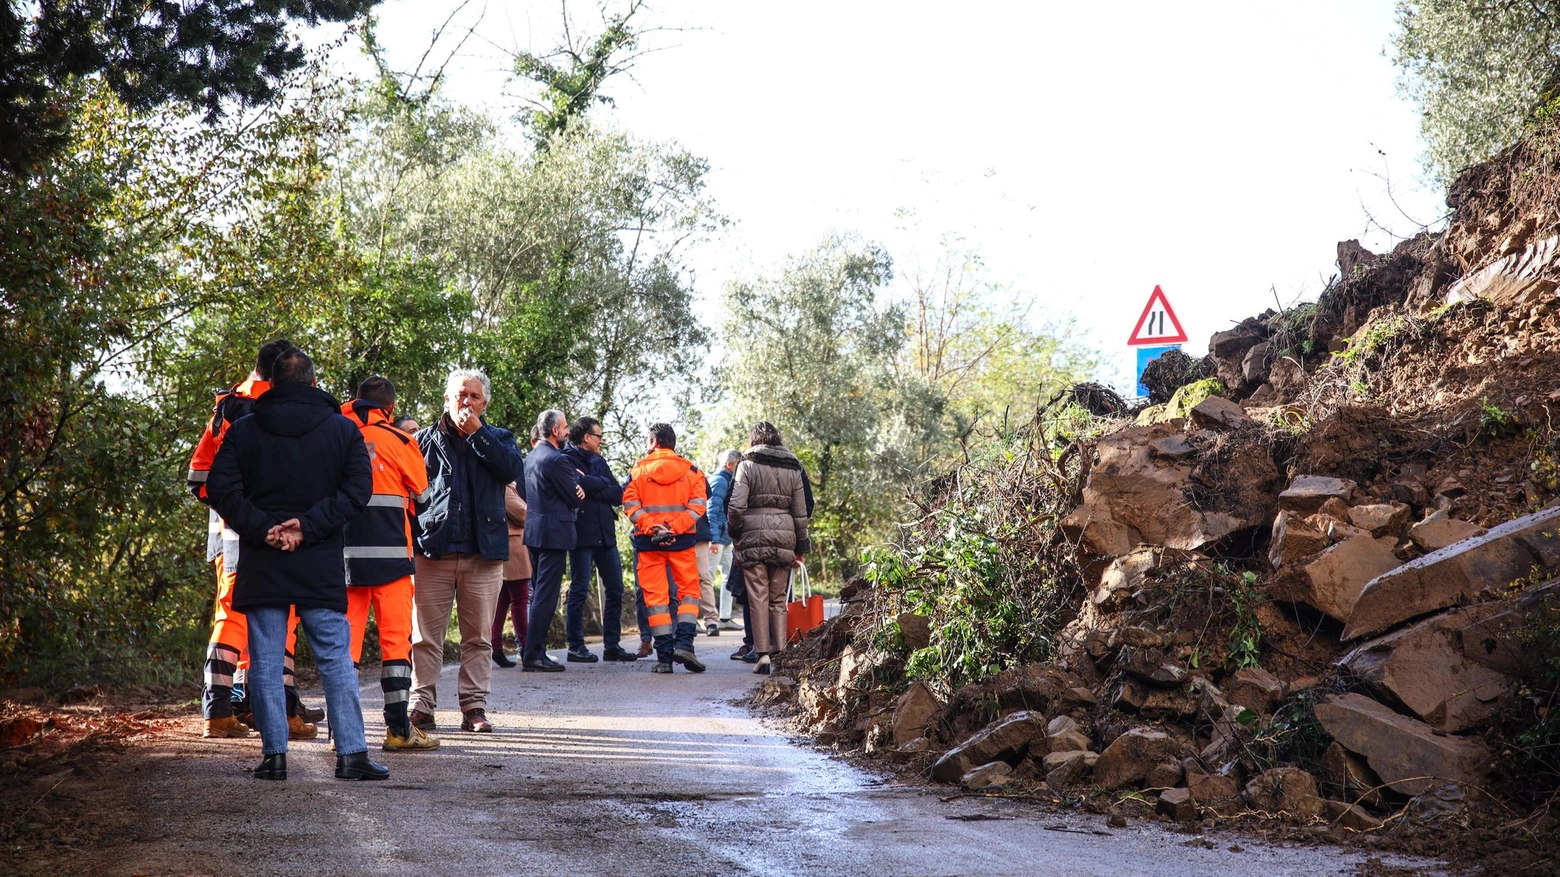 Dopo l'alluvione, la Diocesi di Pistoia ha raccolto fondi per aiutare le zone colpite. Ora apre un avviso pubblico per gestire gli aiuti rimanenti.